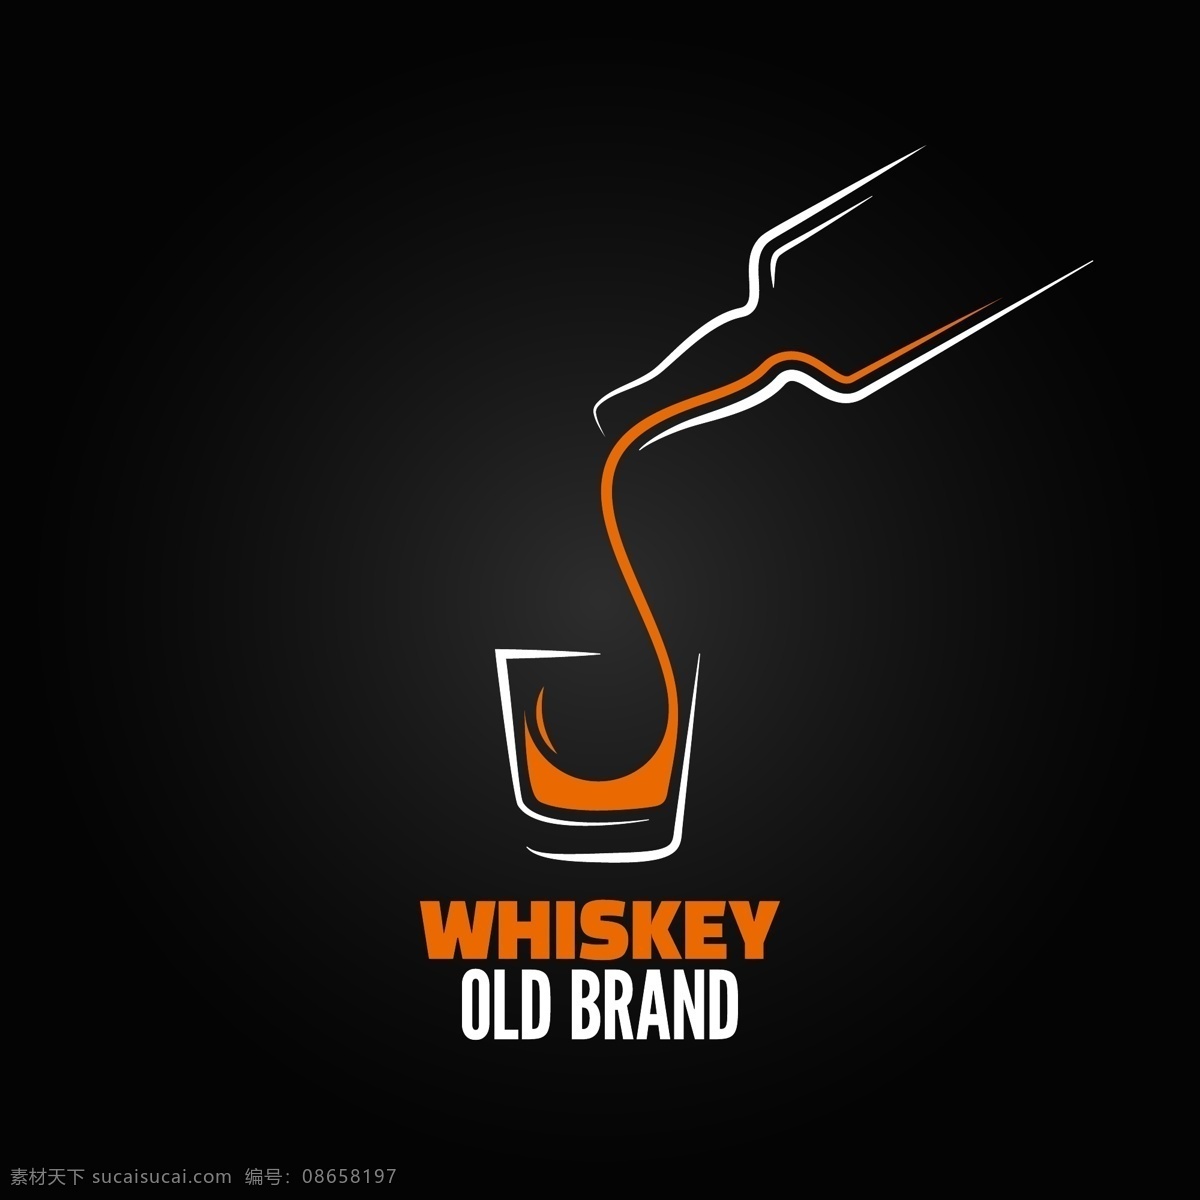 威士忌酒标志 威士忌 酒标志 酒瓶 酒杯 酒logo 行业标志 标志图标 矢量素材 黑色